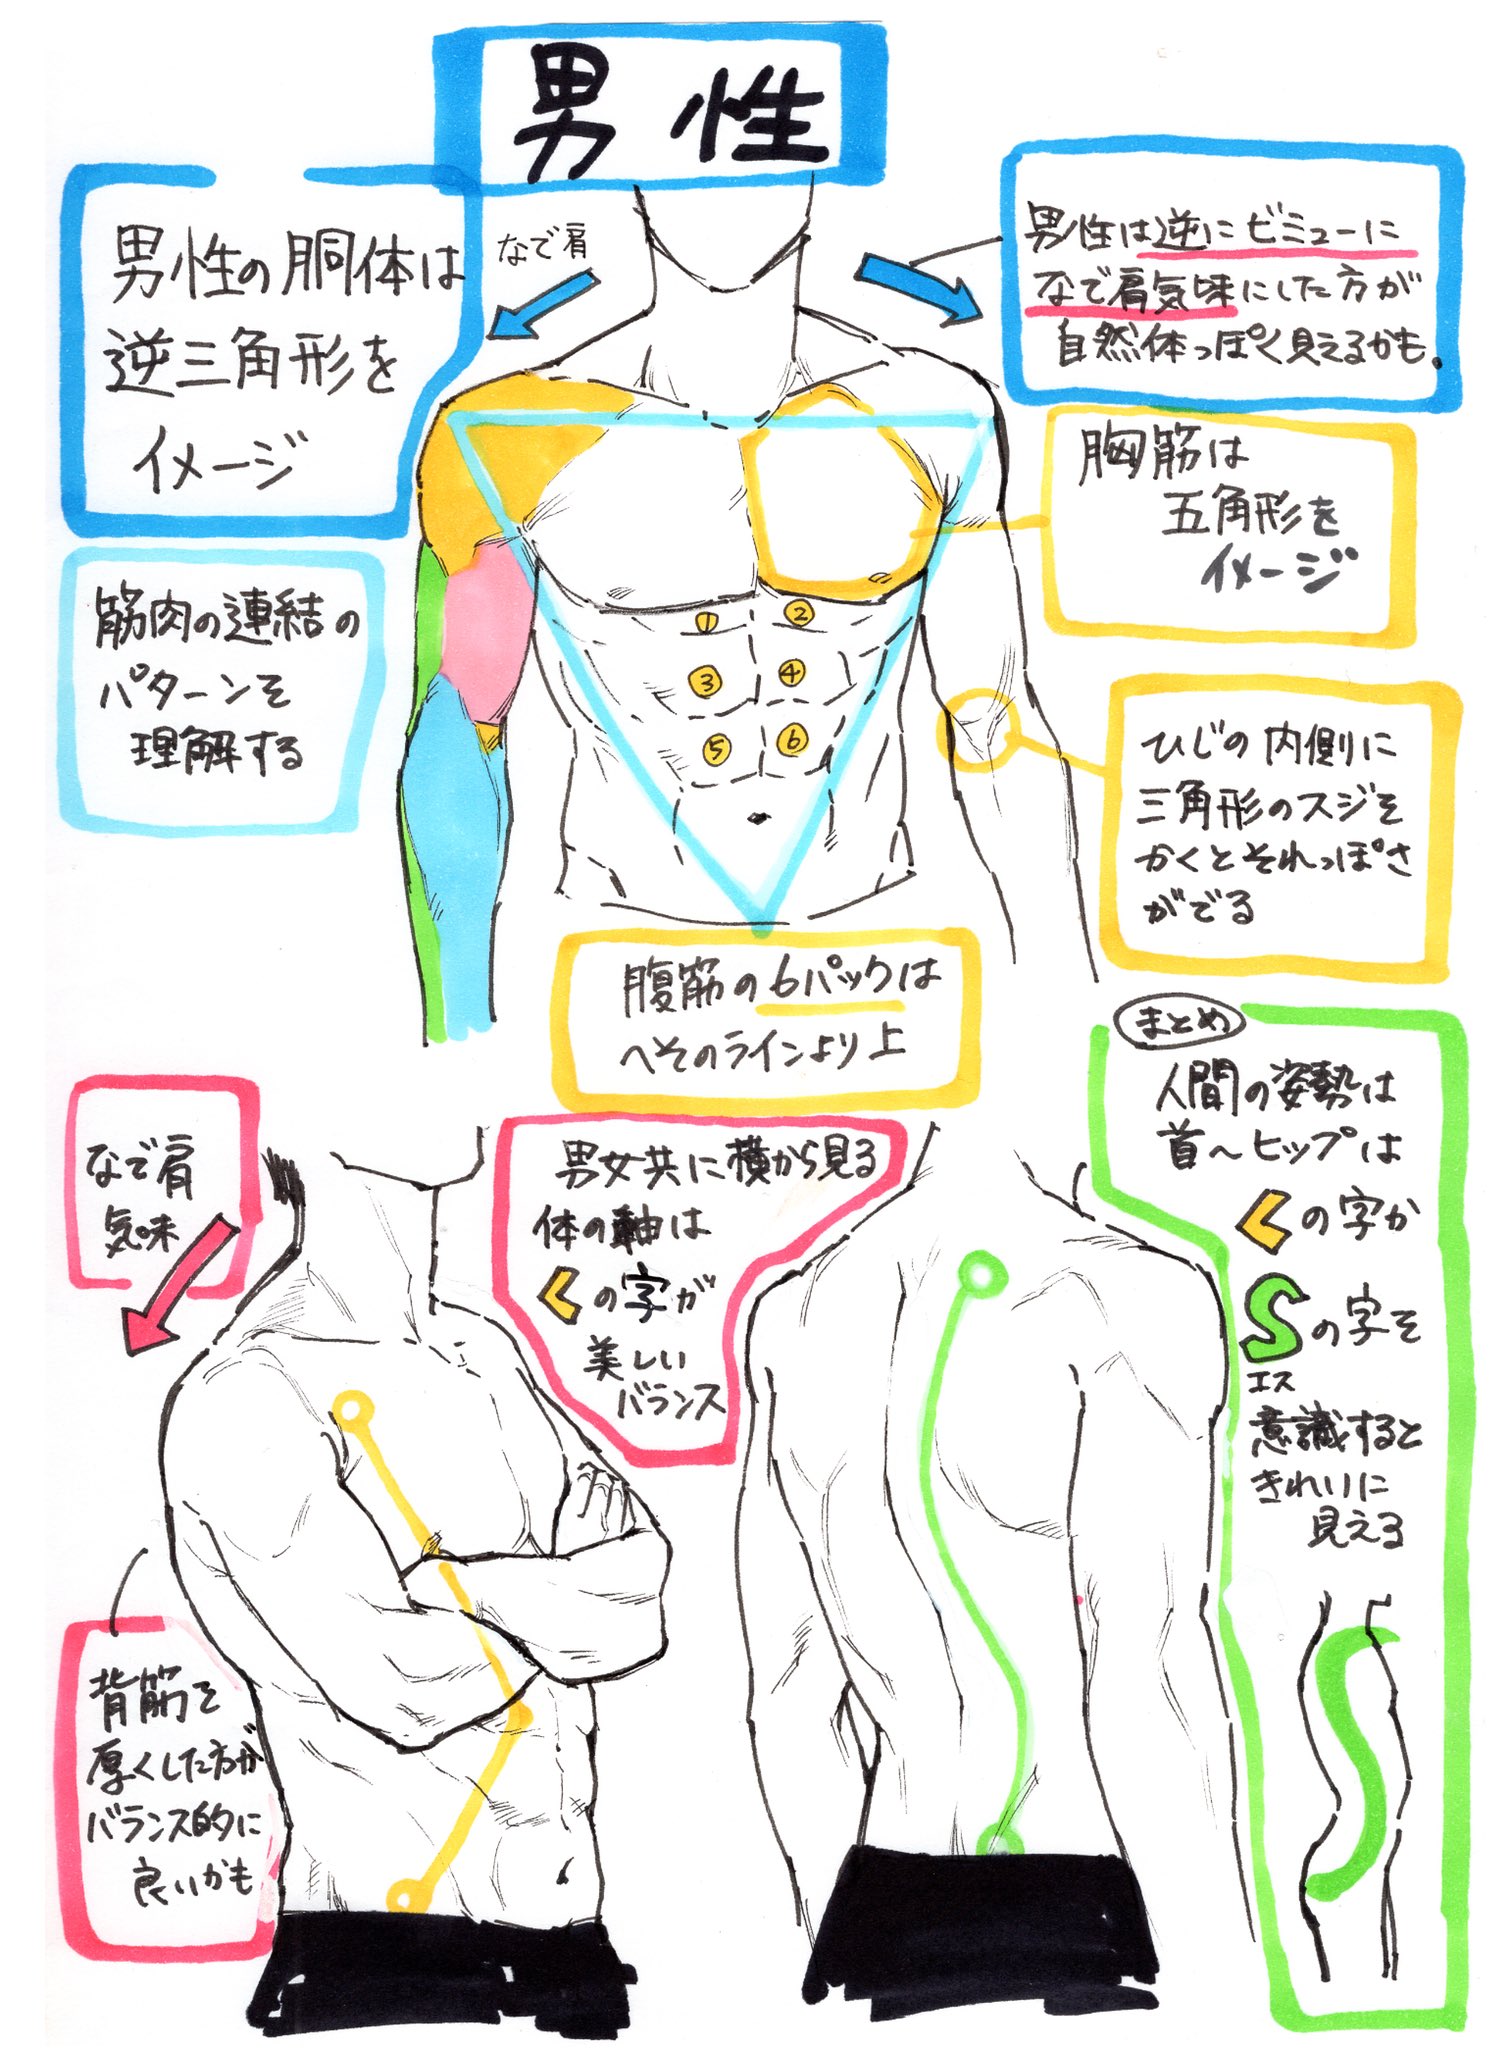 吉村拓也 イラスト講座 イラスト初心者でも描ける 初歩的な女性 と男性 の 身体の描き方 の違い T Co Bvijhidwfh Twitter